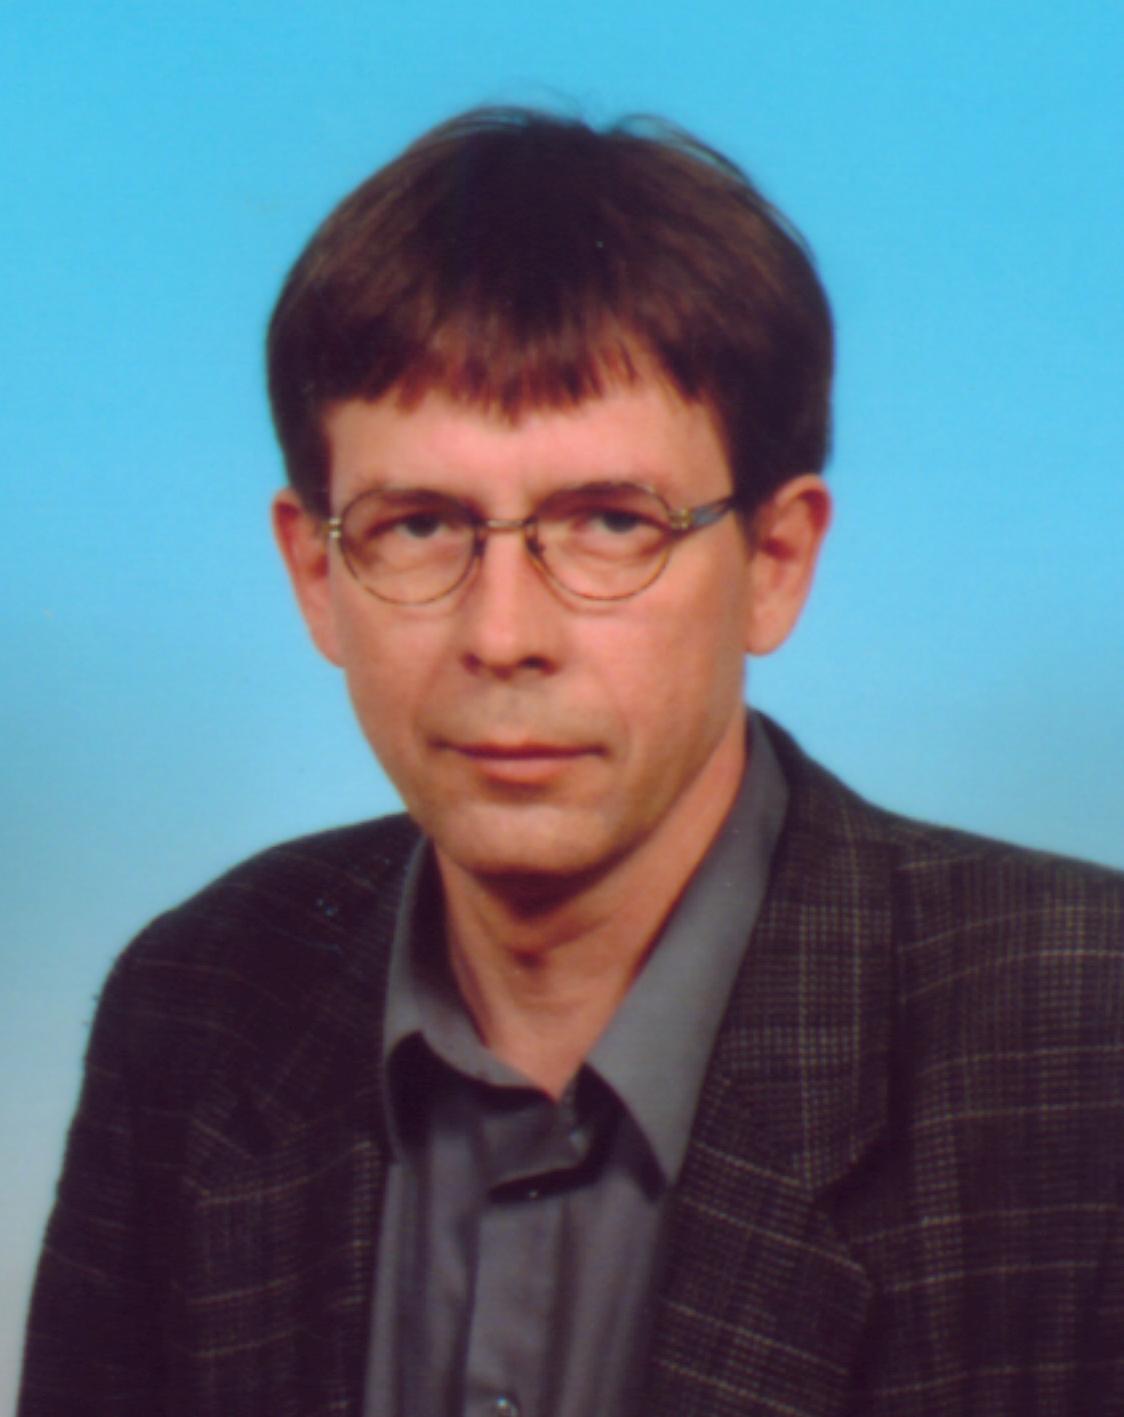 Dyrektor Piotr Szczepkowski